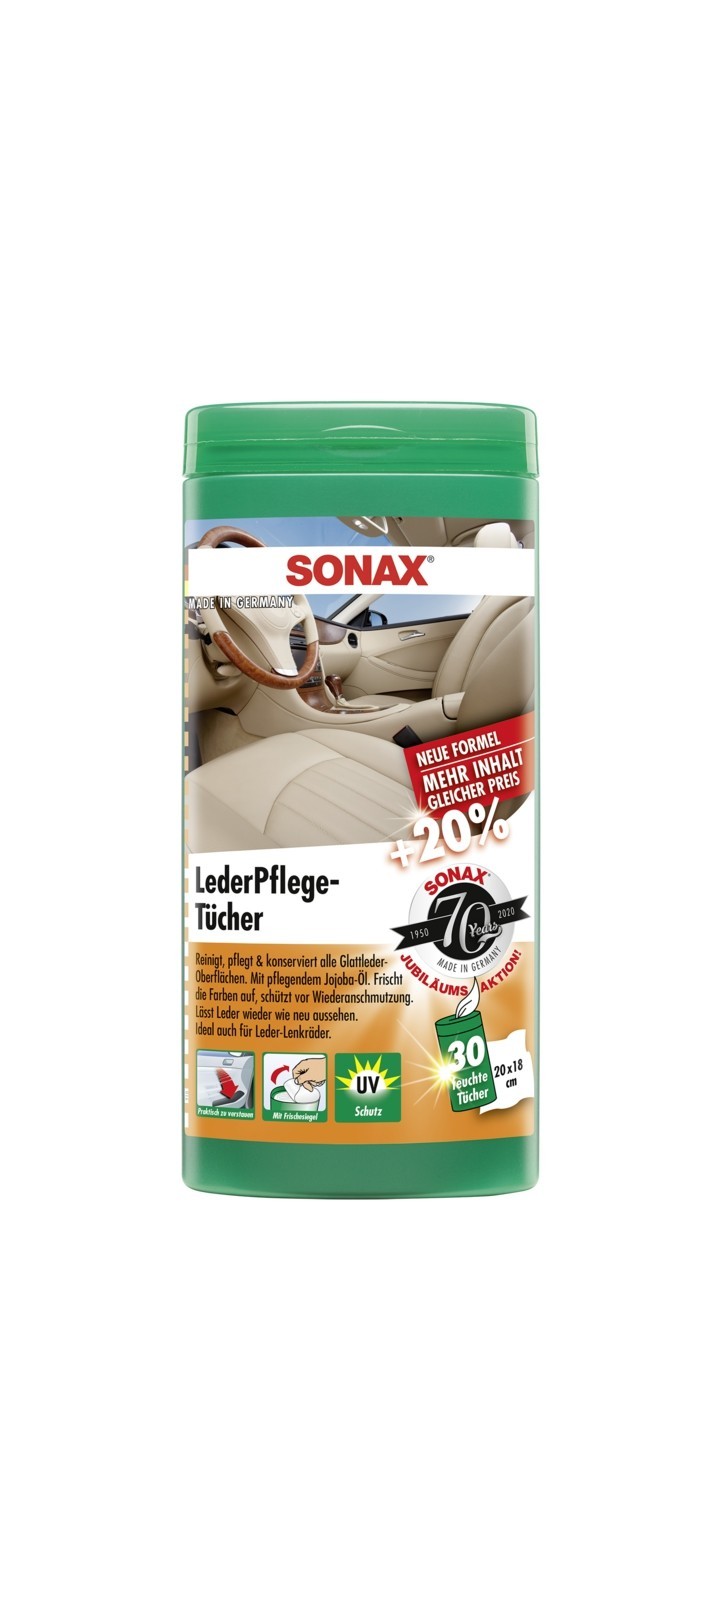 SONAX Leder-Pflegetcher Box (25 Stk), Art.-Nr. 04123000